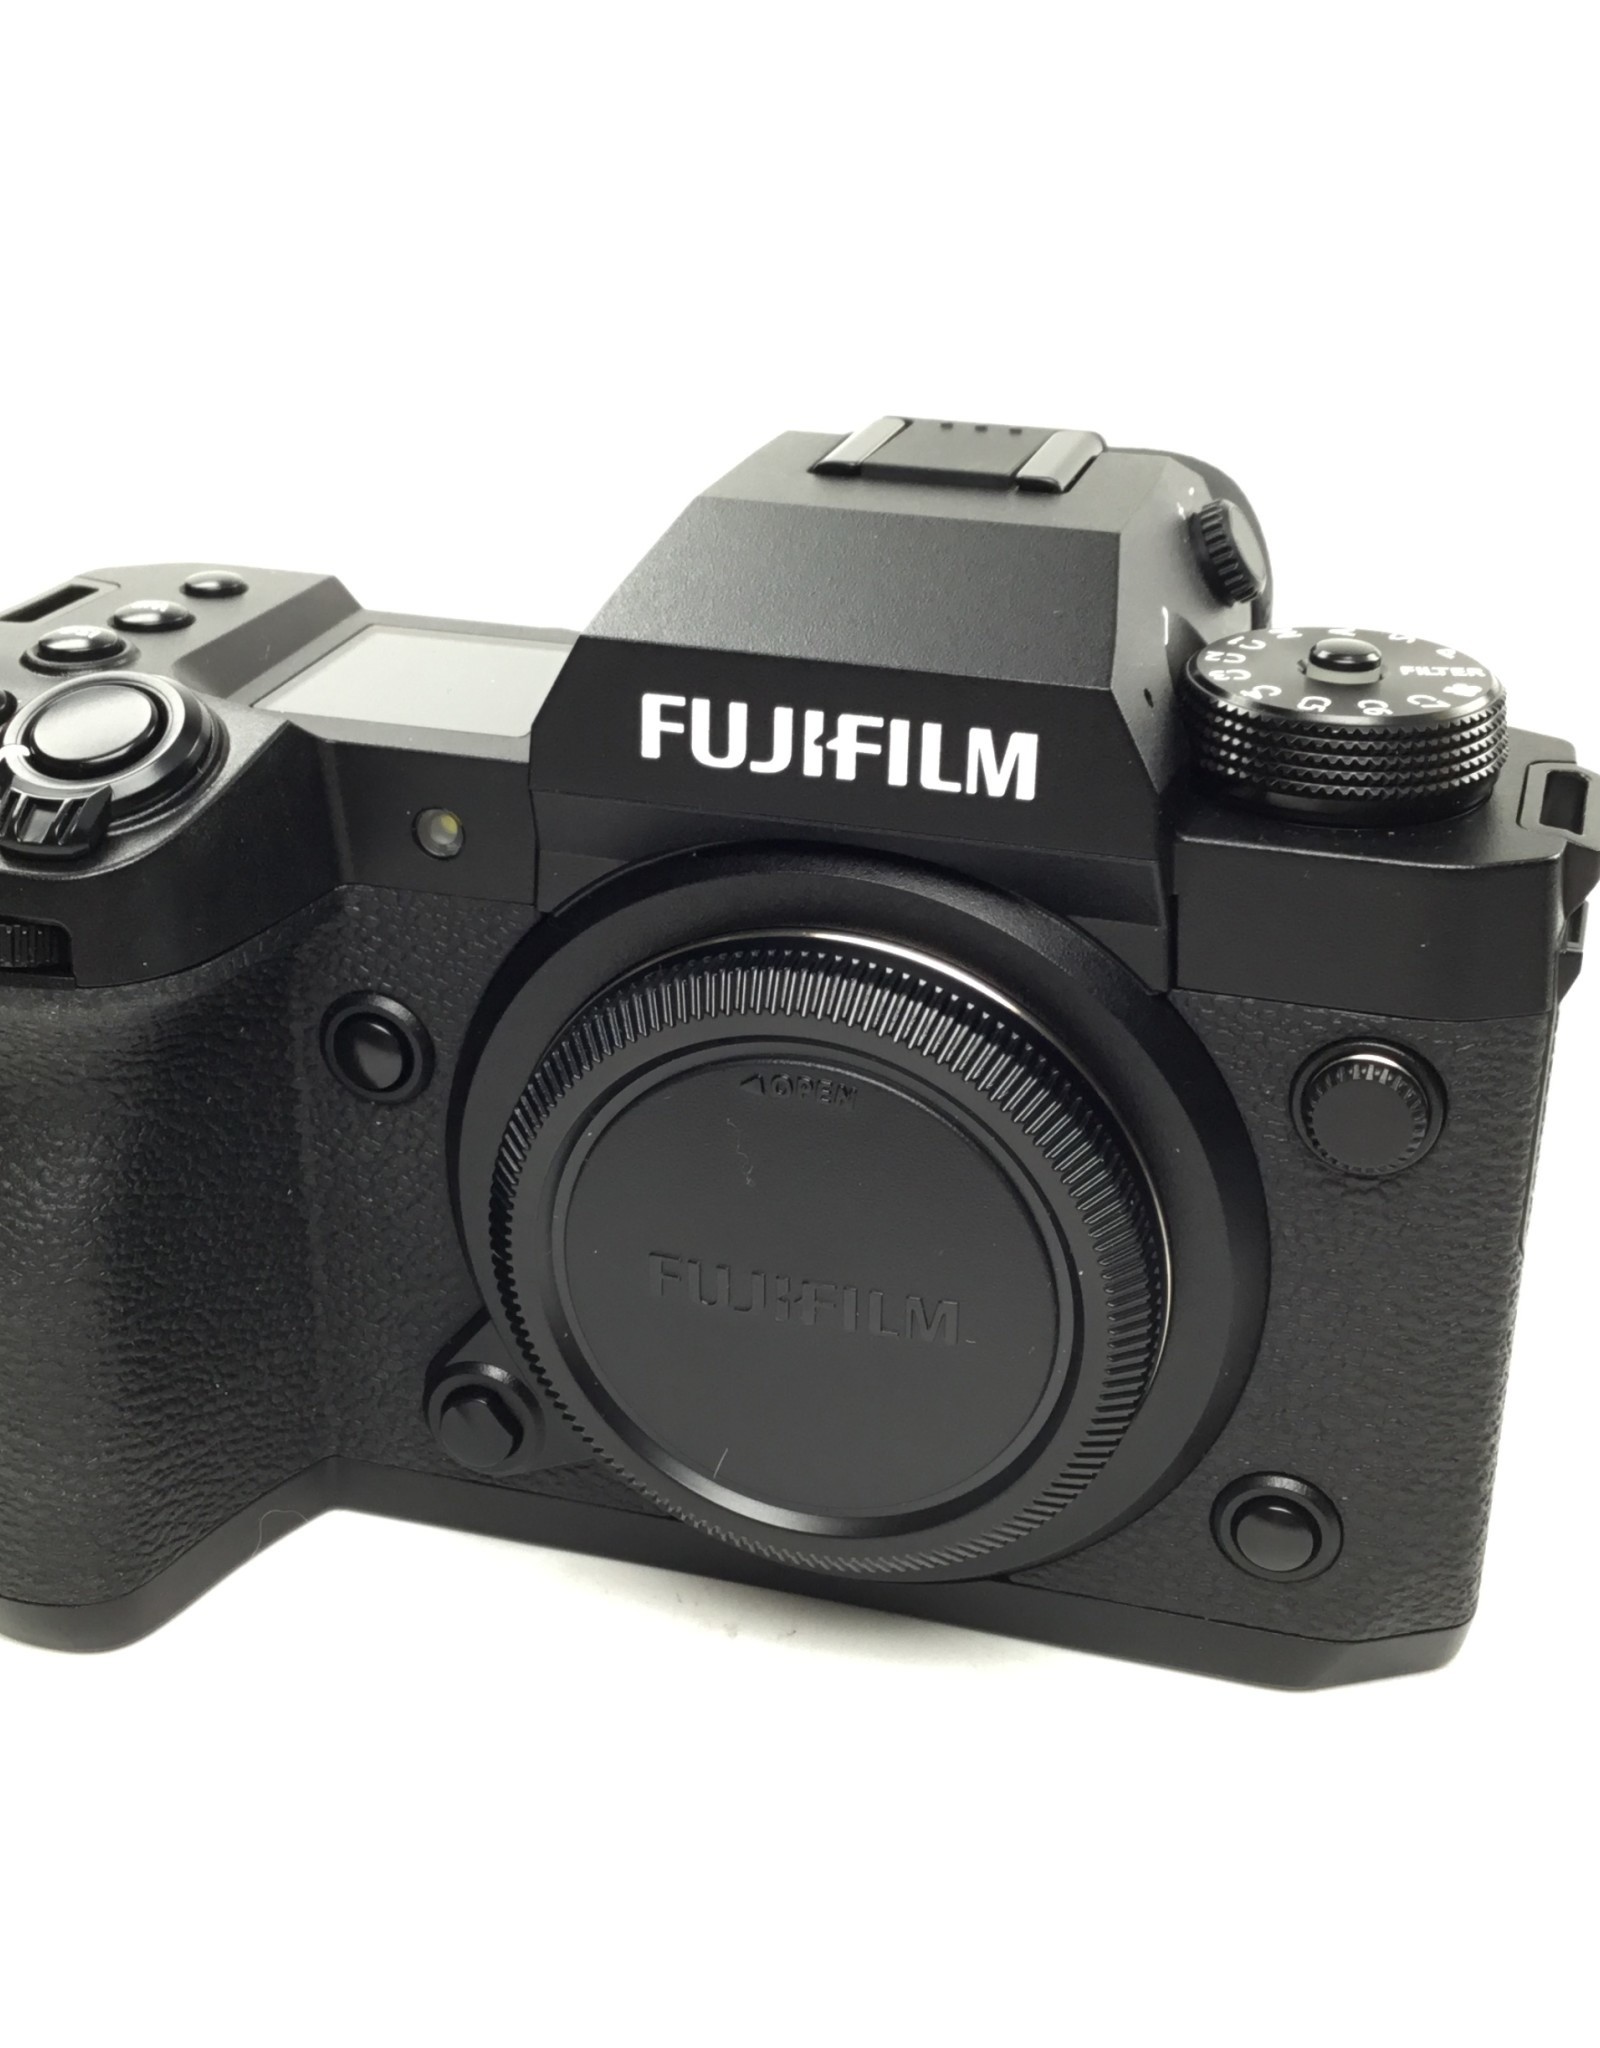 FUJI Fuji X-H2 Camera Body in Box Used LN